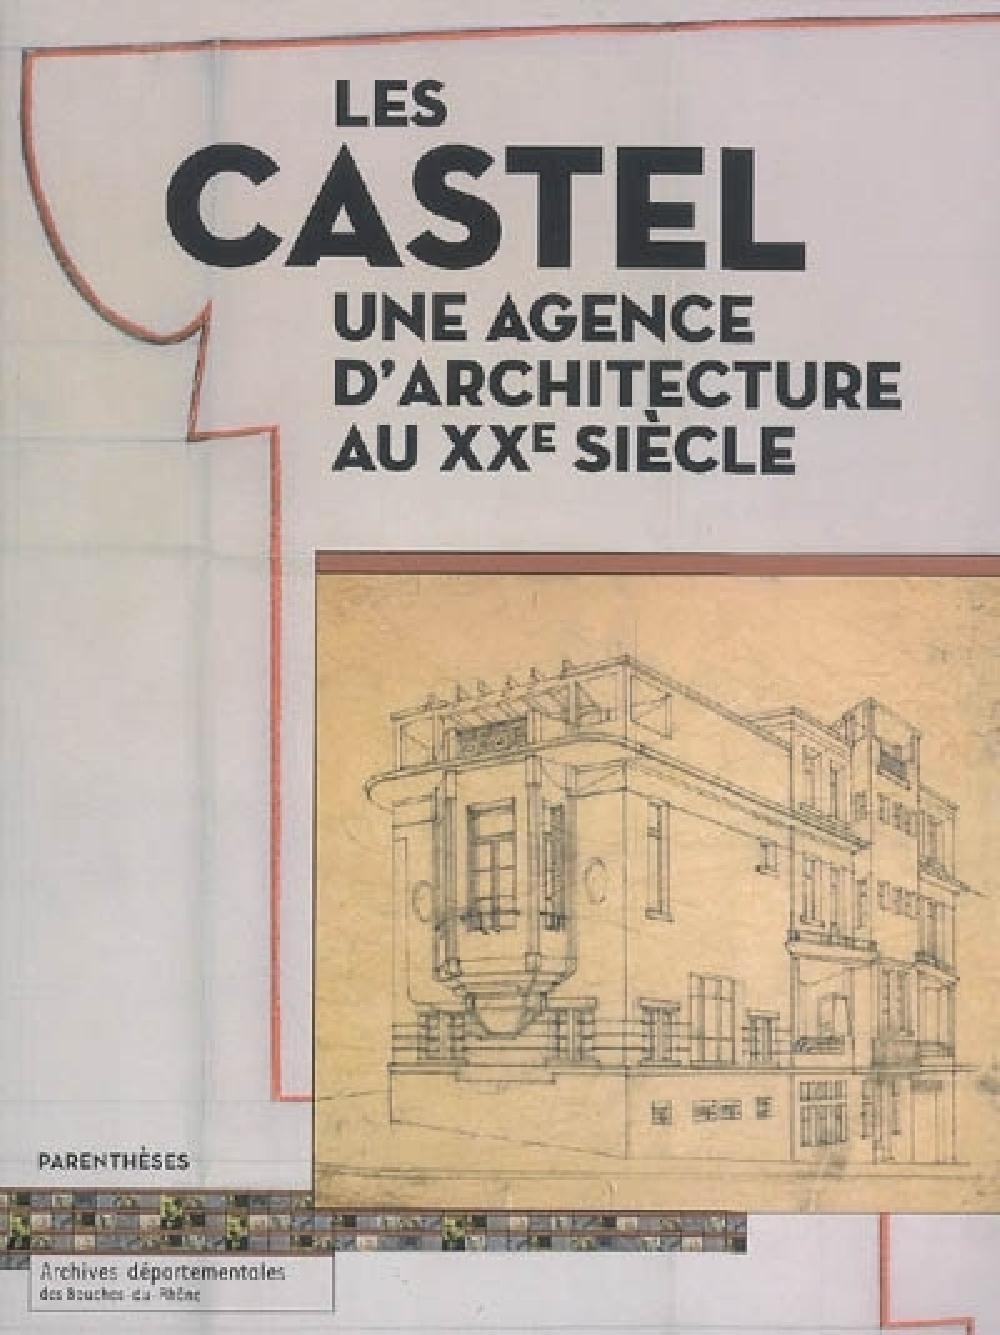 Les Castel une agence d'architecture au XXe siècle